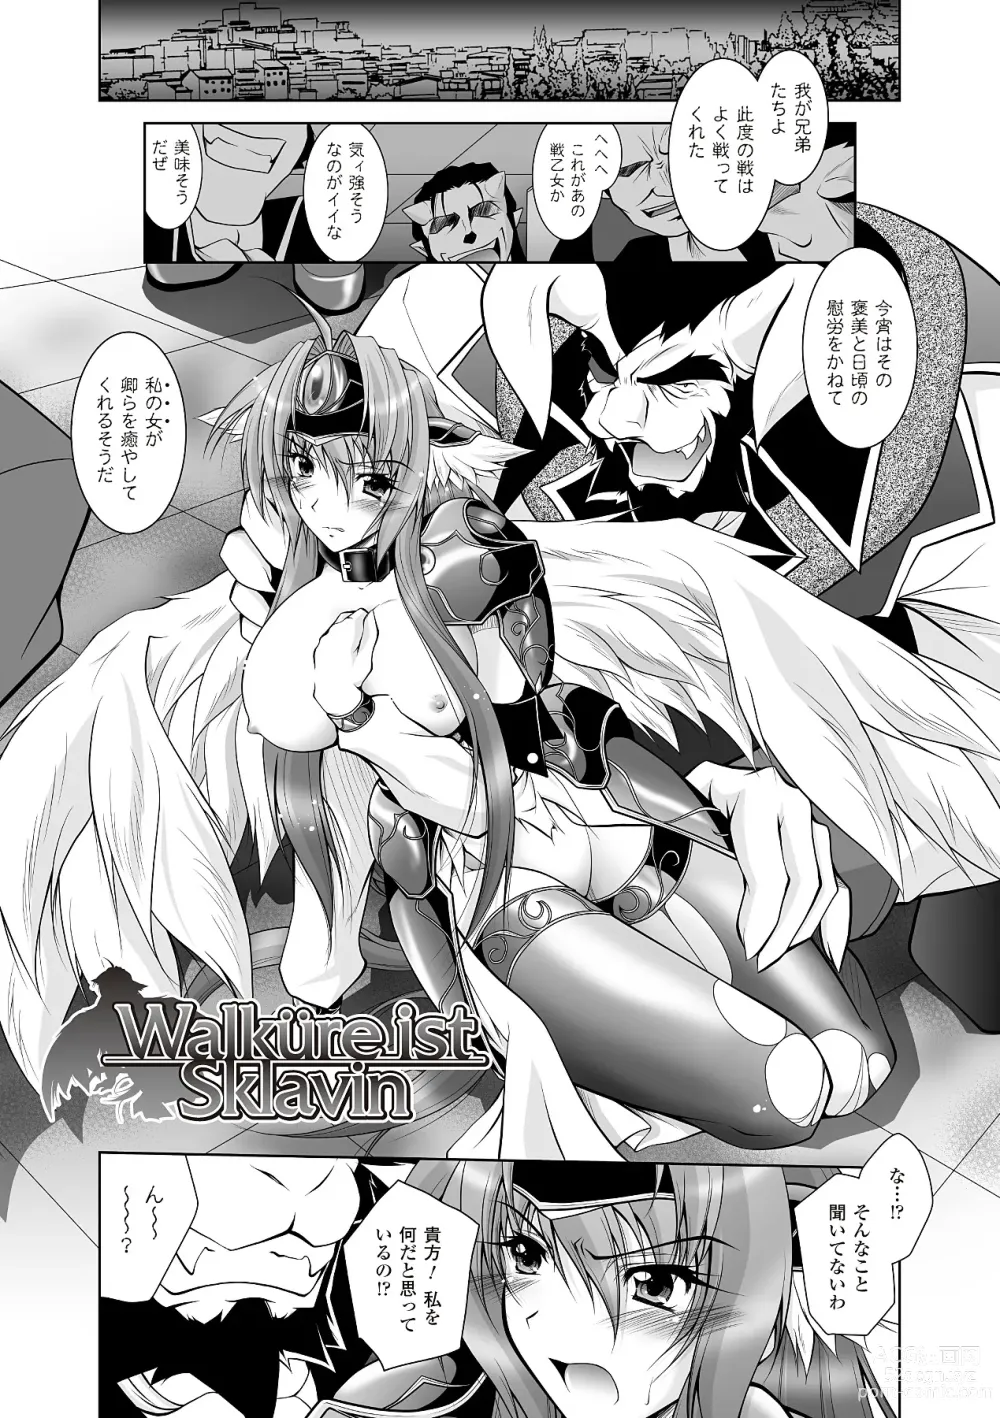 Page 31 of manga Datenshi-tachi no Rhapsody - Fallen Angels Rhapsody